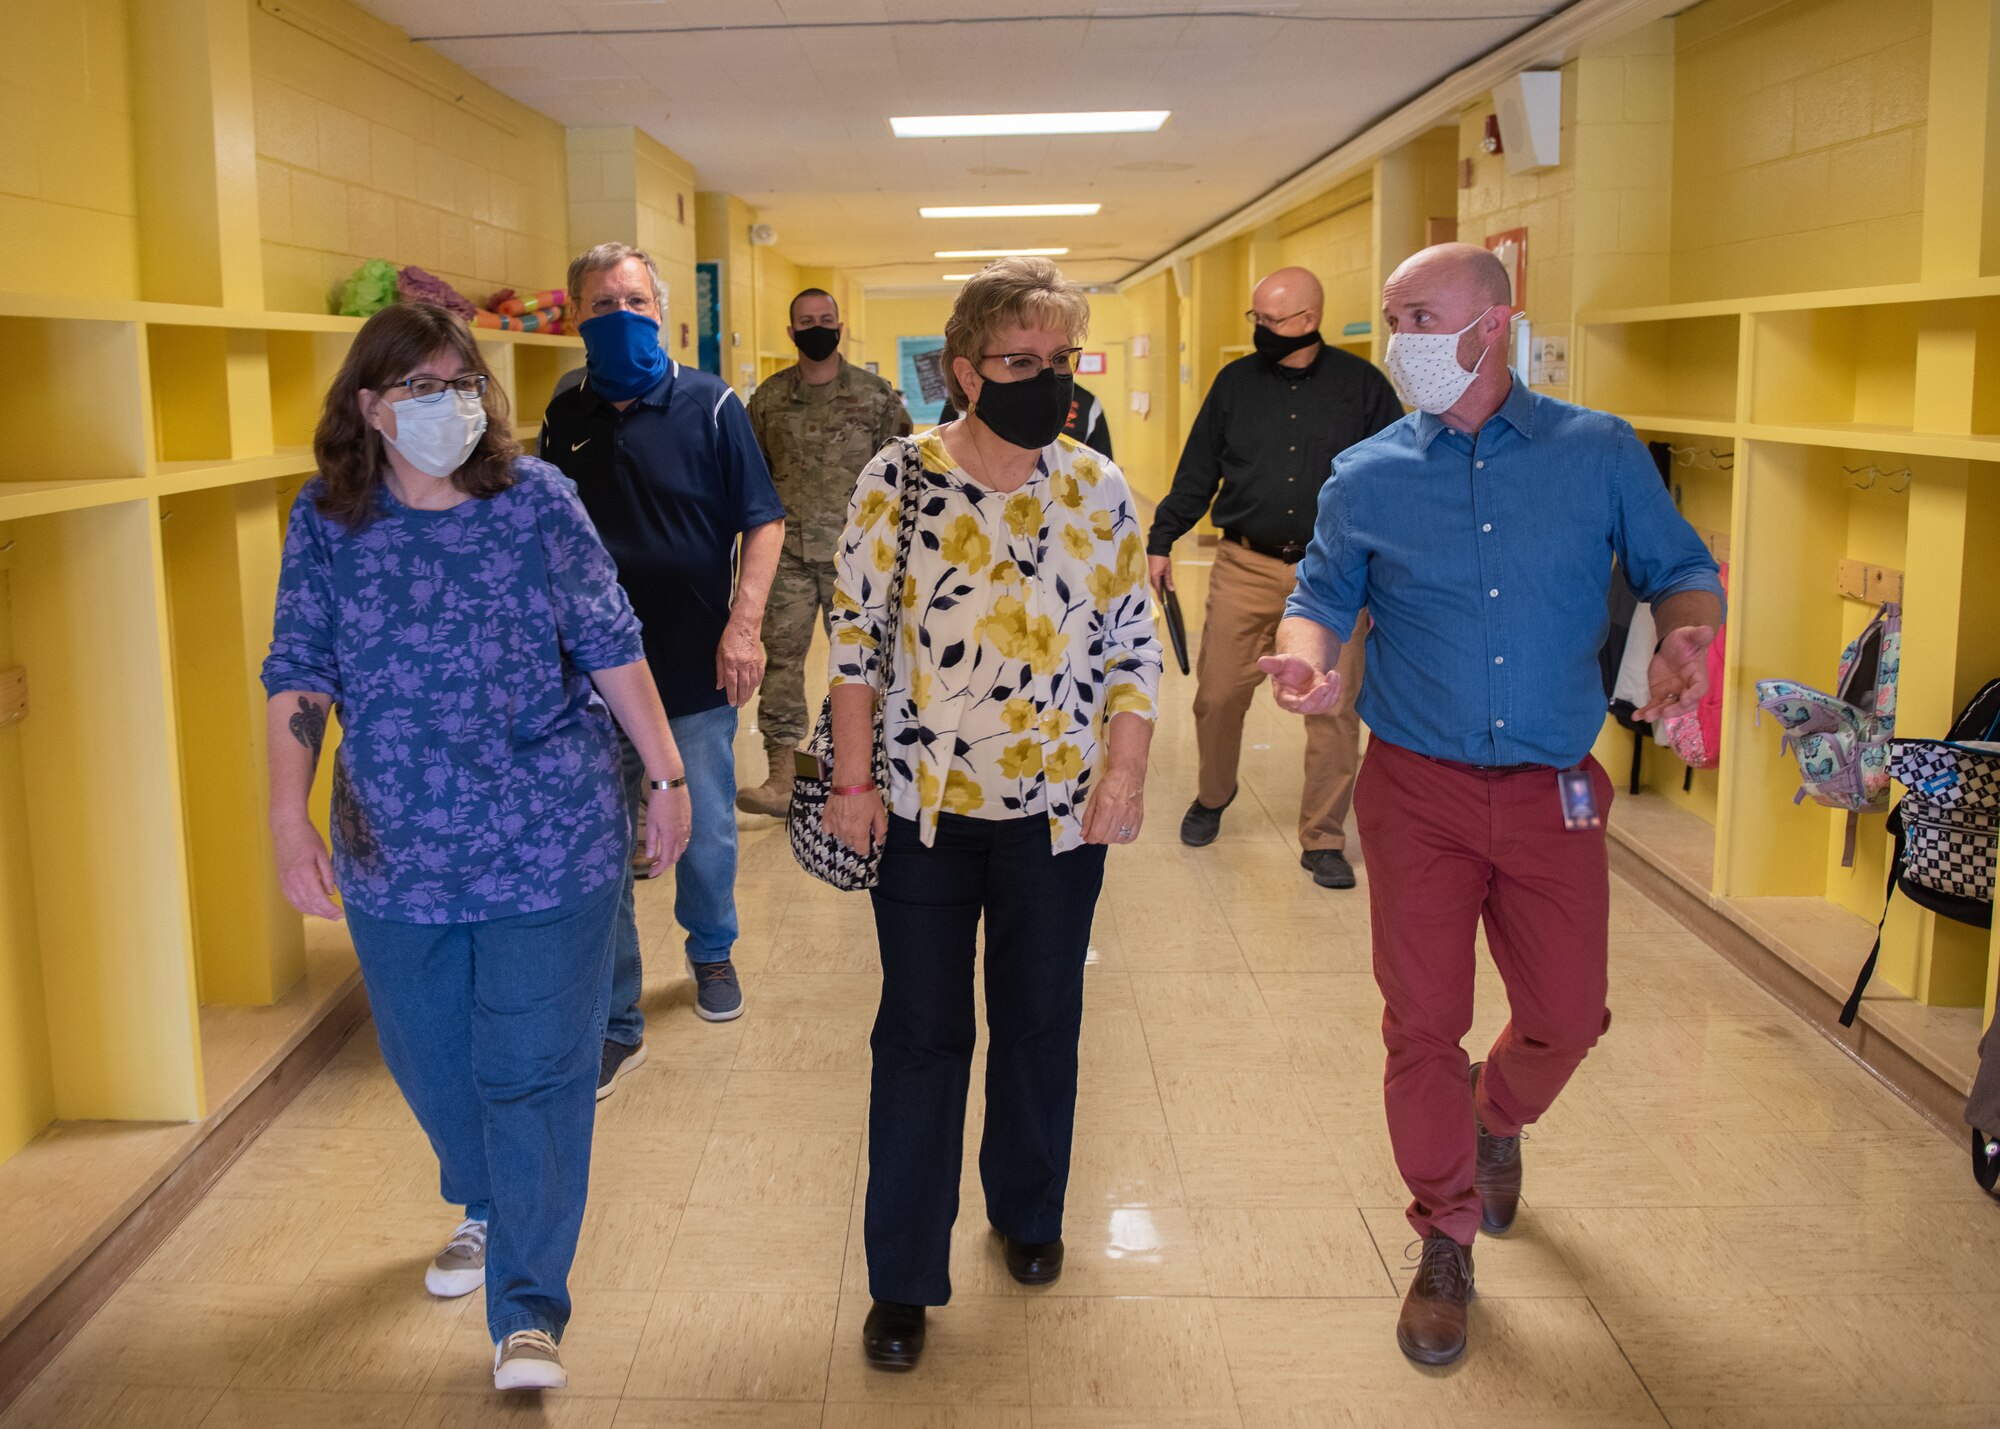 Seven individuals walk down a school hallway.